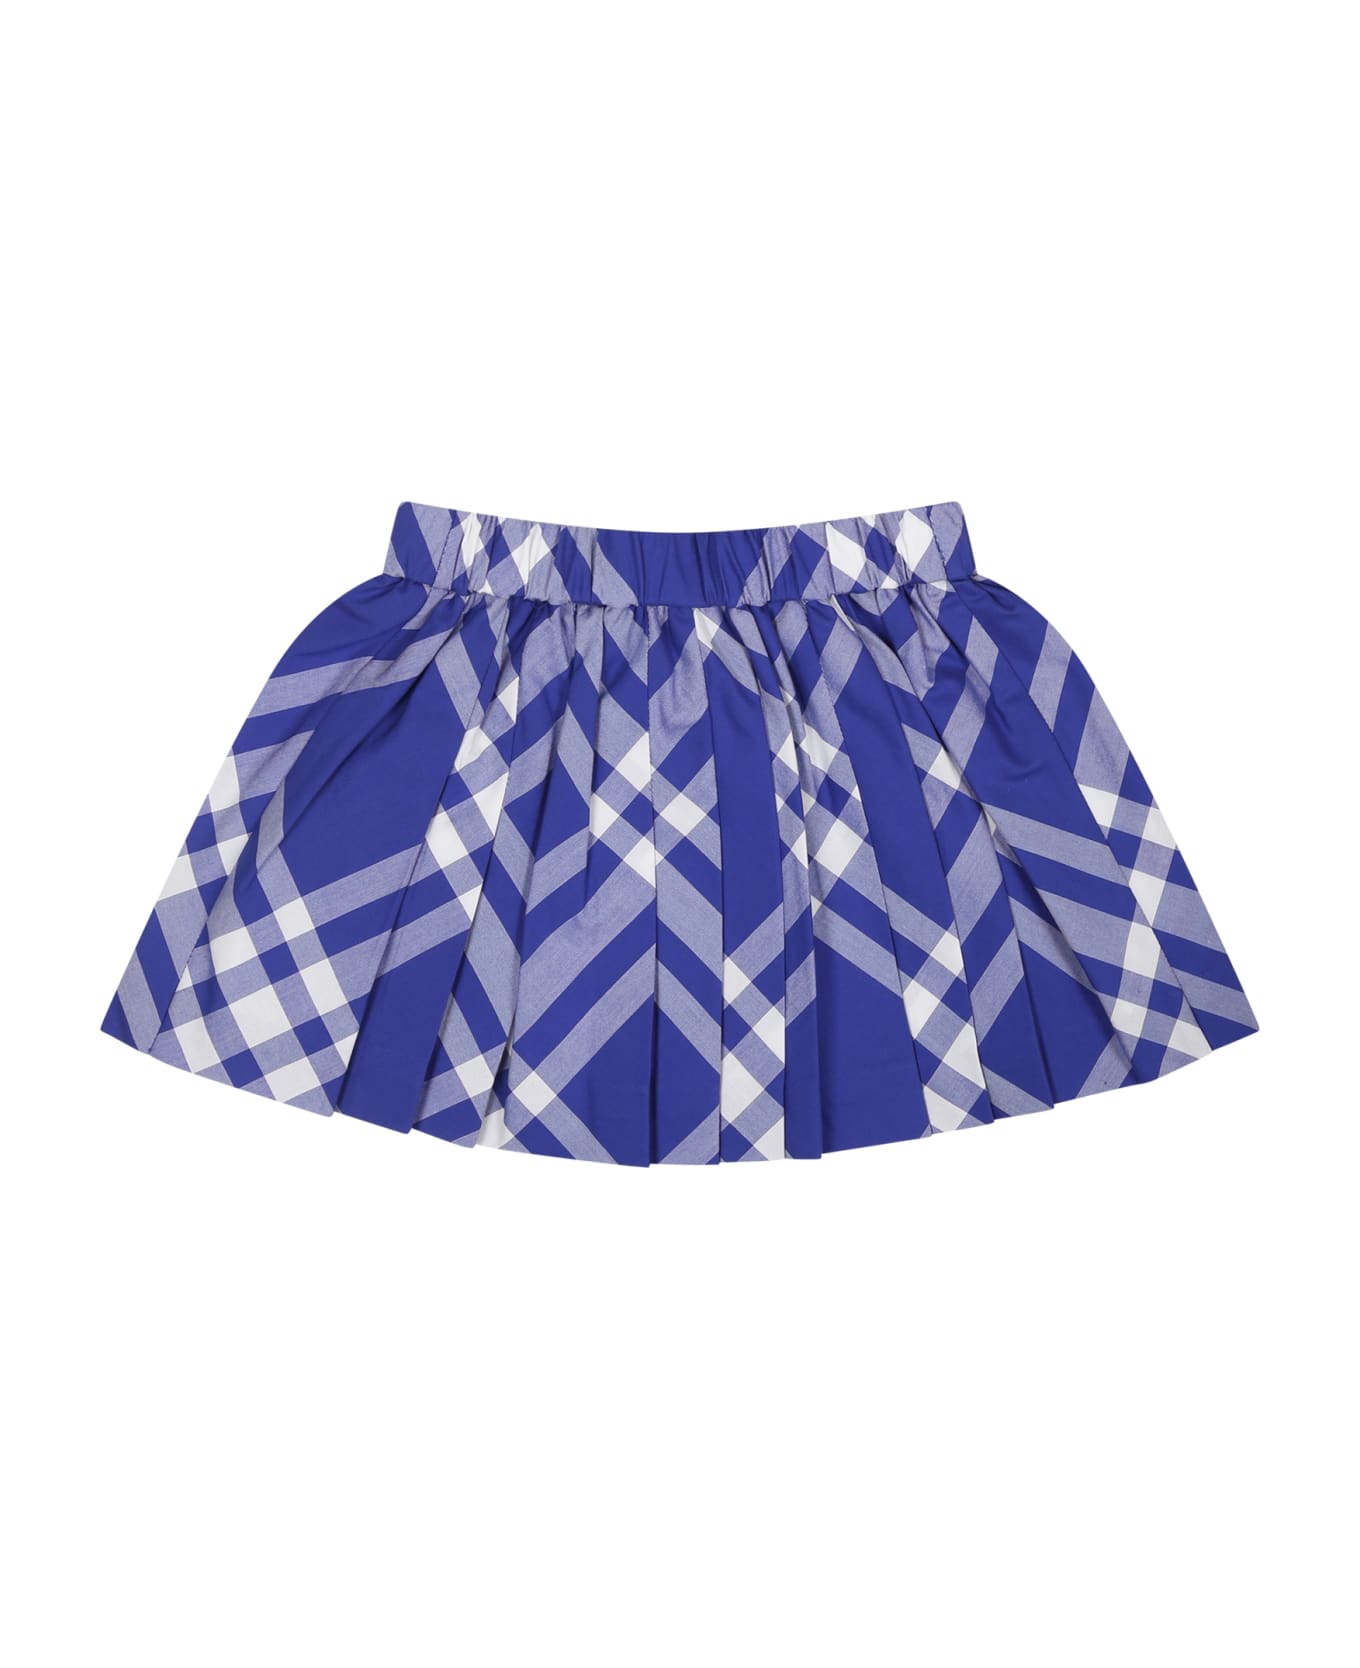 Burberry Blue Skirt For Baby Girl - Blue